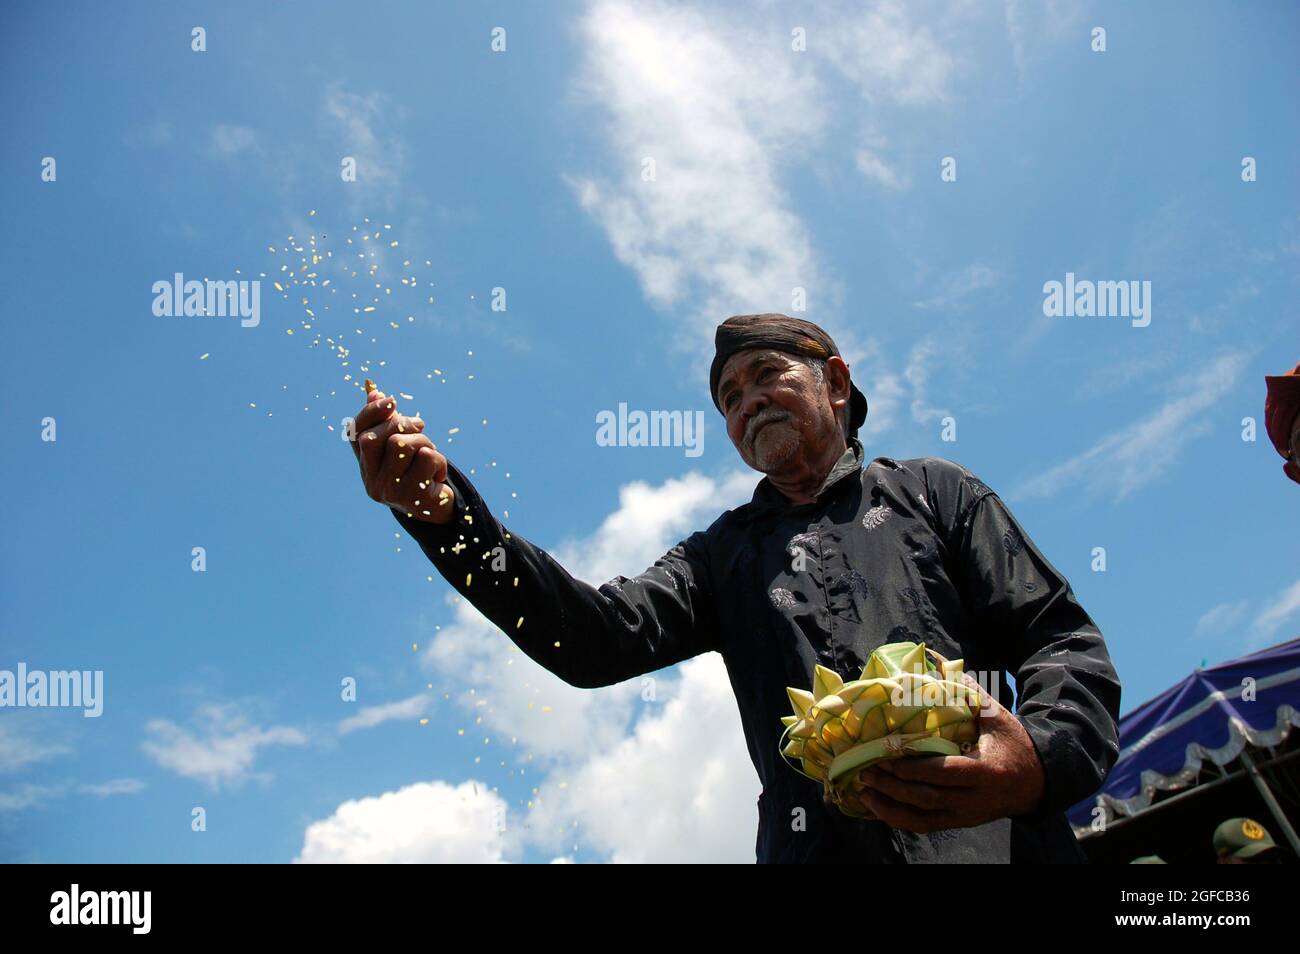 Jetez la fleur comme un symbole de bénir et d'espoir. Le pêcheur espère qu'au cours du mois prochain il aura de la chance, de la sécurité et beaucoup de poissons. Bantul, Yogyakarta, Indonésie. 2 février 2006. Une fois par an, les pêcheurs de Samas Beach, Bantul, Yogyakarta envoient des offrandes rituelles au NYI Roro Kidul (Reine de la mer du Sud), une déité de la mythologie indonésienne. Ils croient que la Déesse leur accordera une année de bénédiction et de chance. Janvier est un mois difficile pour les pêcheurs à cause de la marée haute en mer du Sud, mais leur foi et leur croyance sur la Déesse leur donnent de l'espoir. Banque D'Images